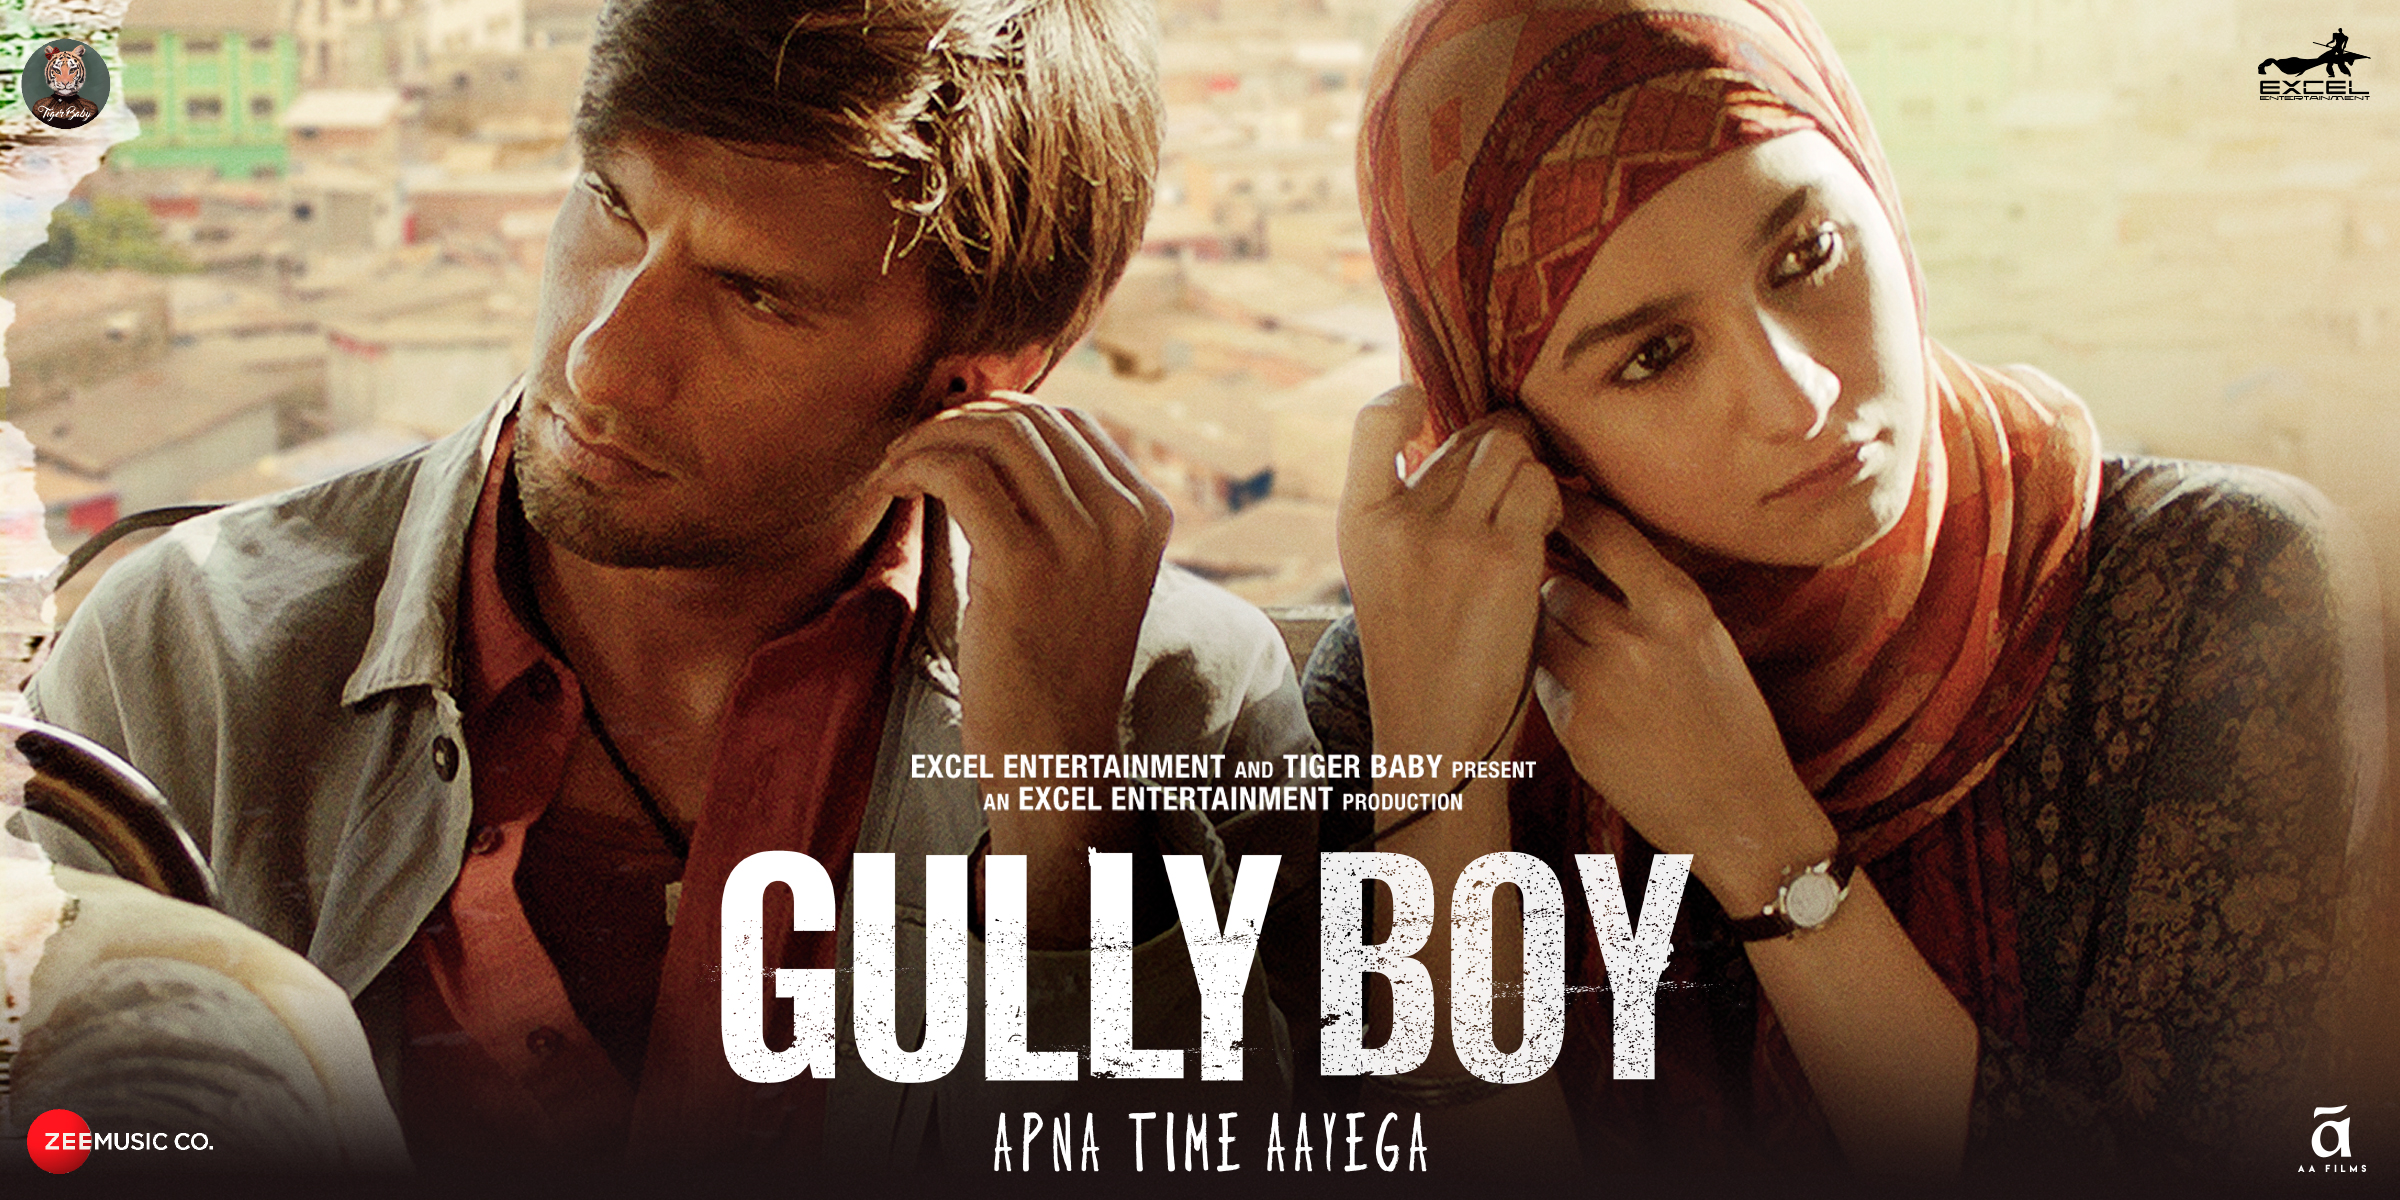 gully boy box office